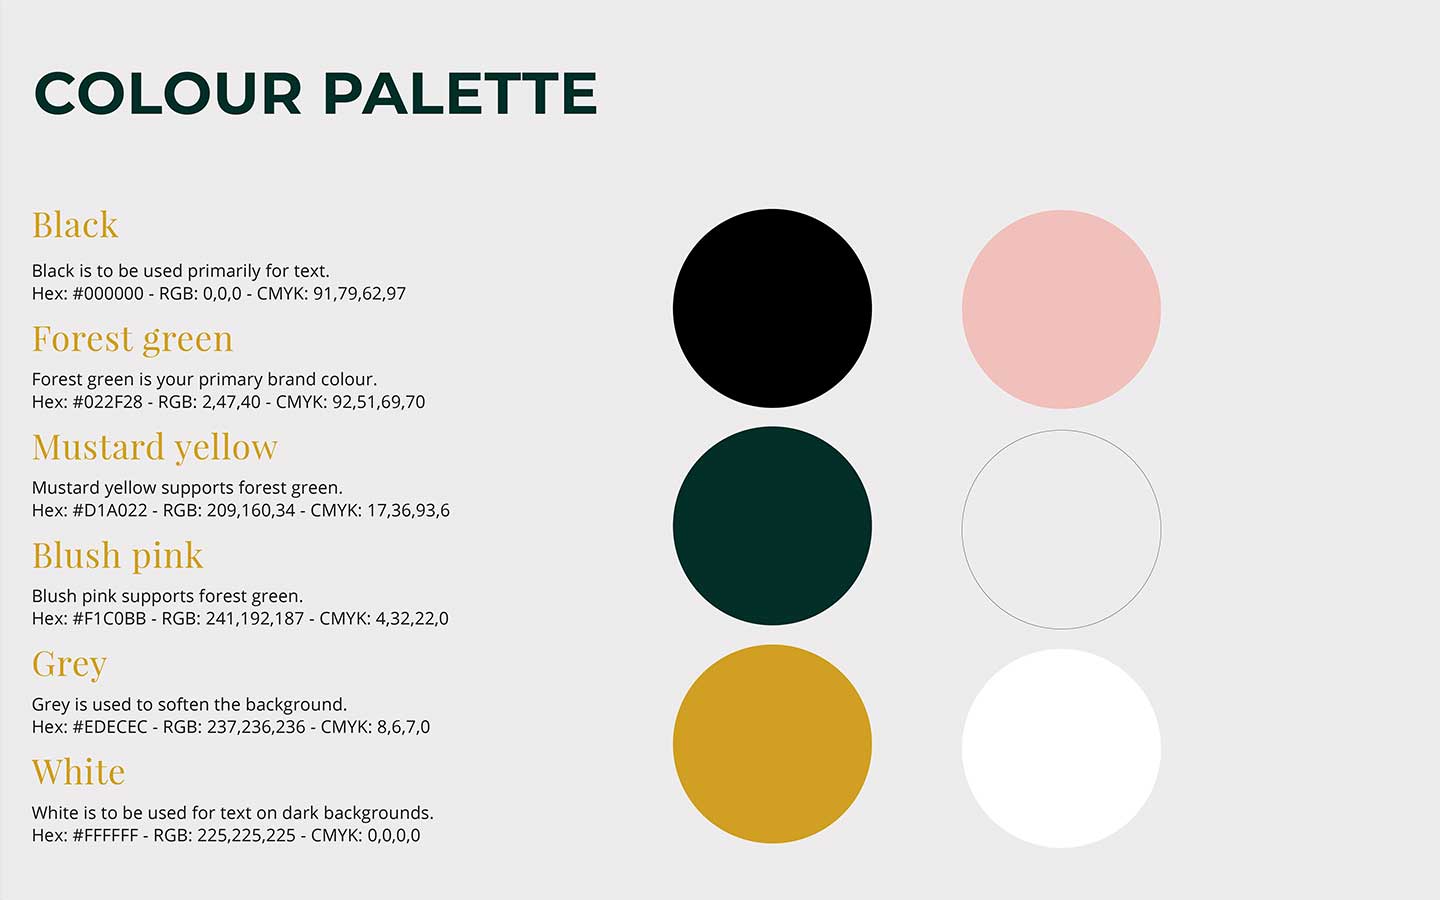 brand guideline booklet colour palette designed by graphic designer melissa carne